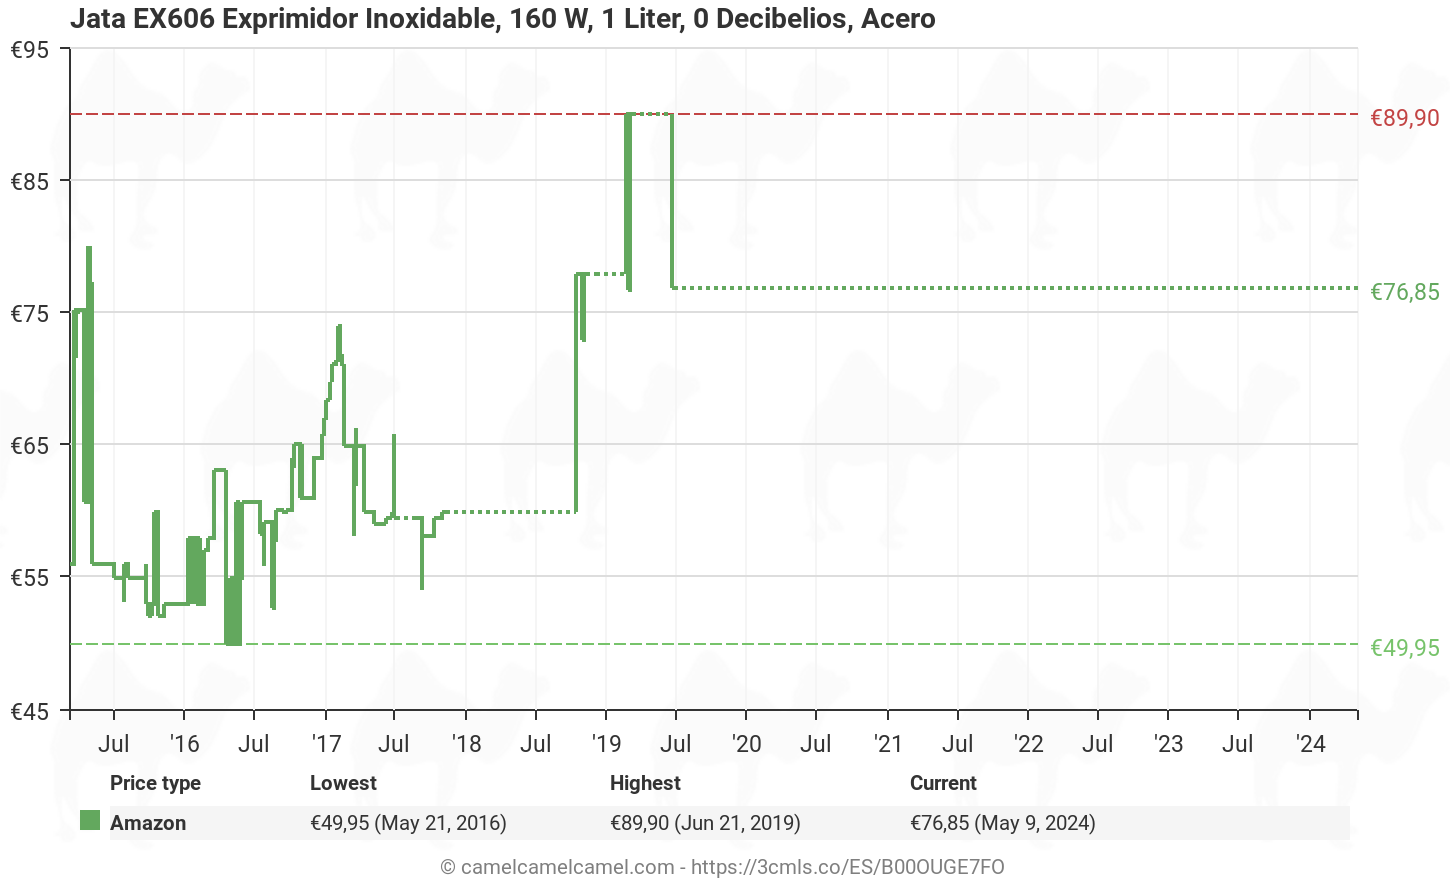 Historia de precios de Amazon para Jata EX1029 Exprimidor Inoxidable, 160 W, 1 Liter